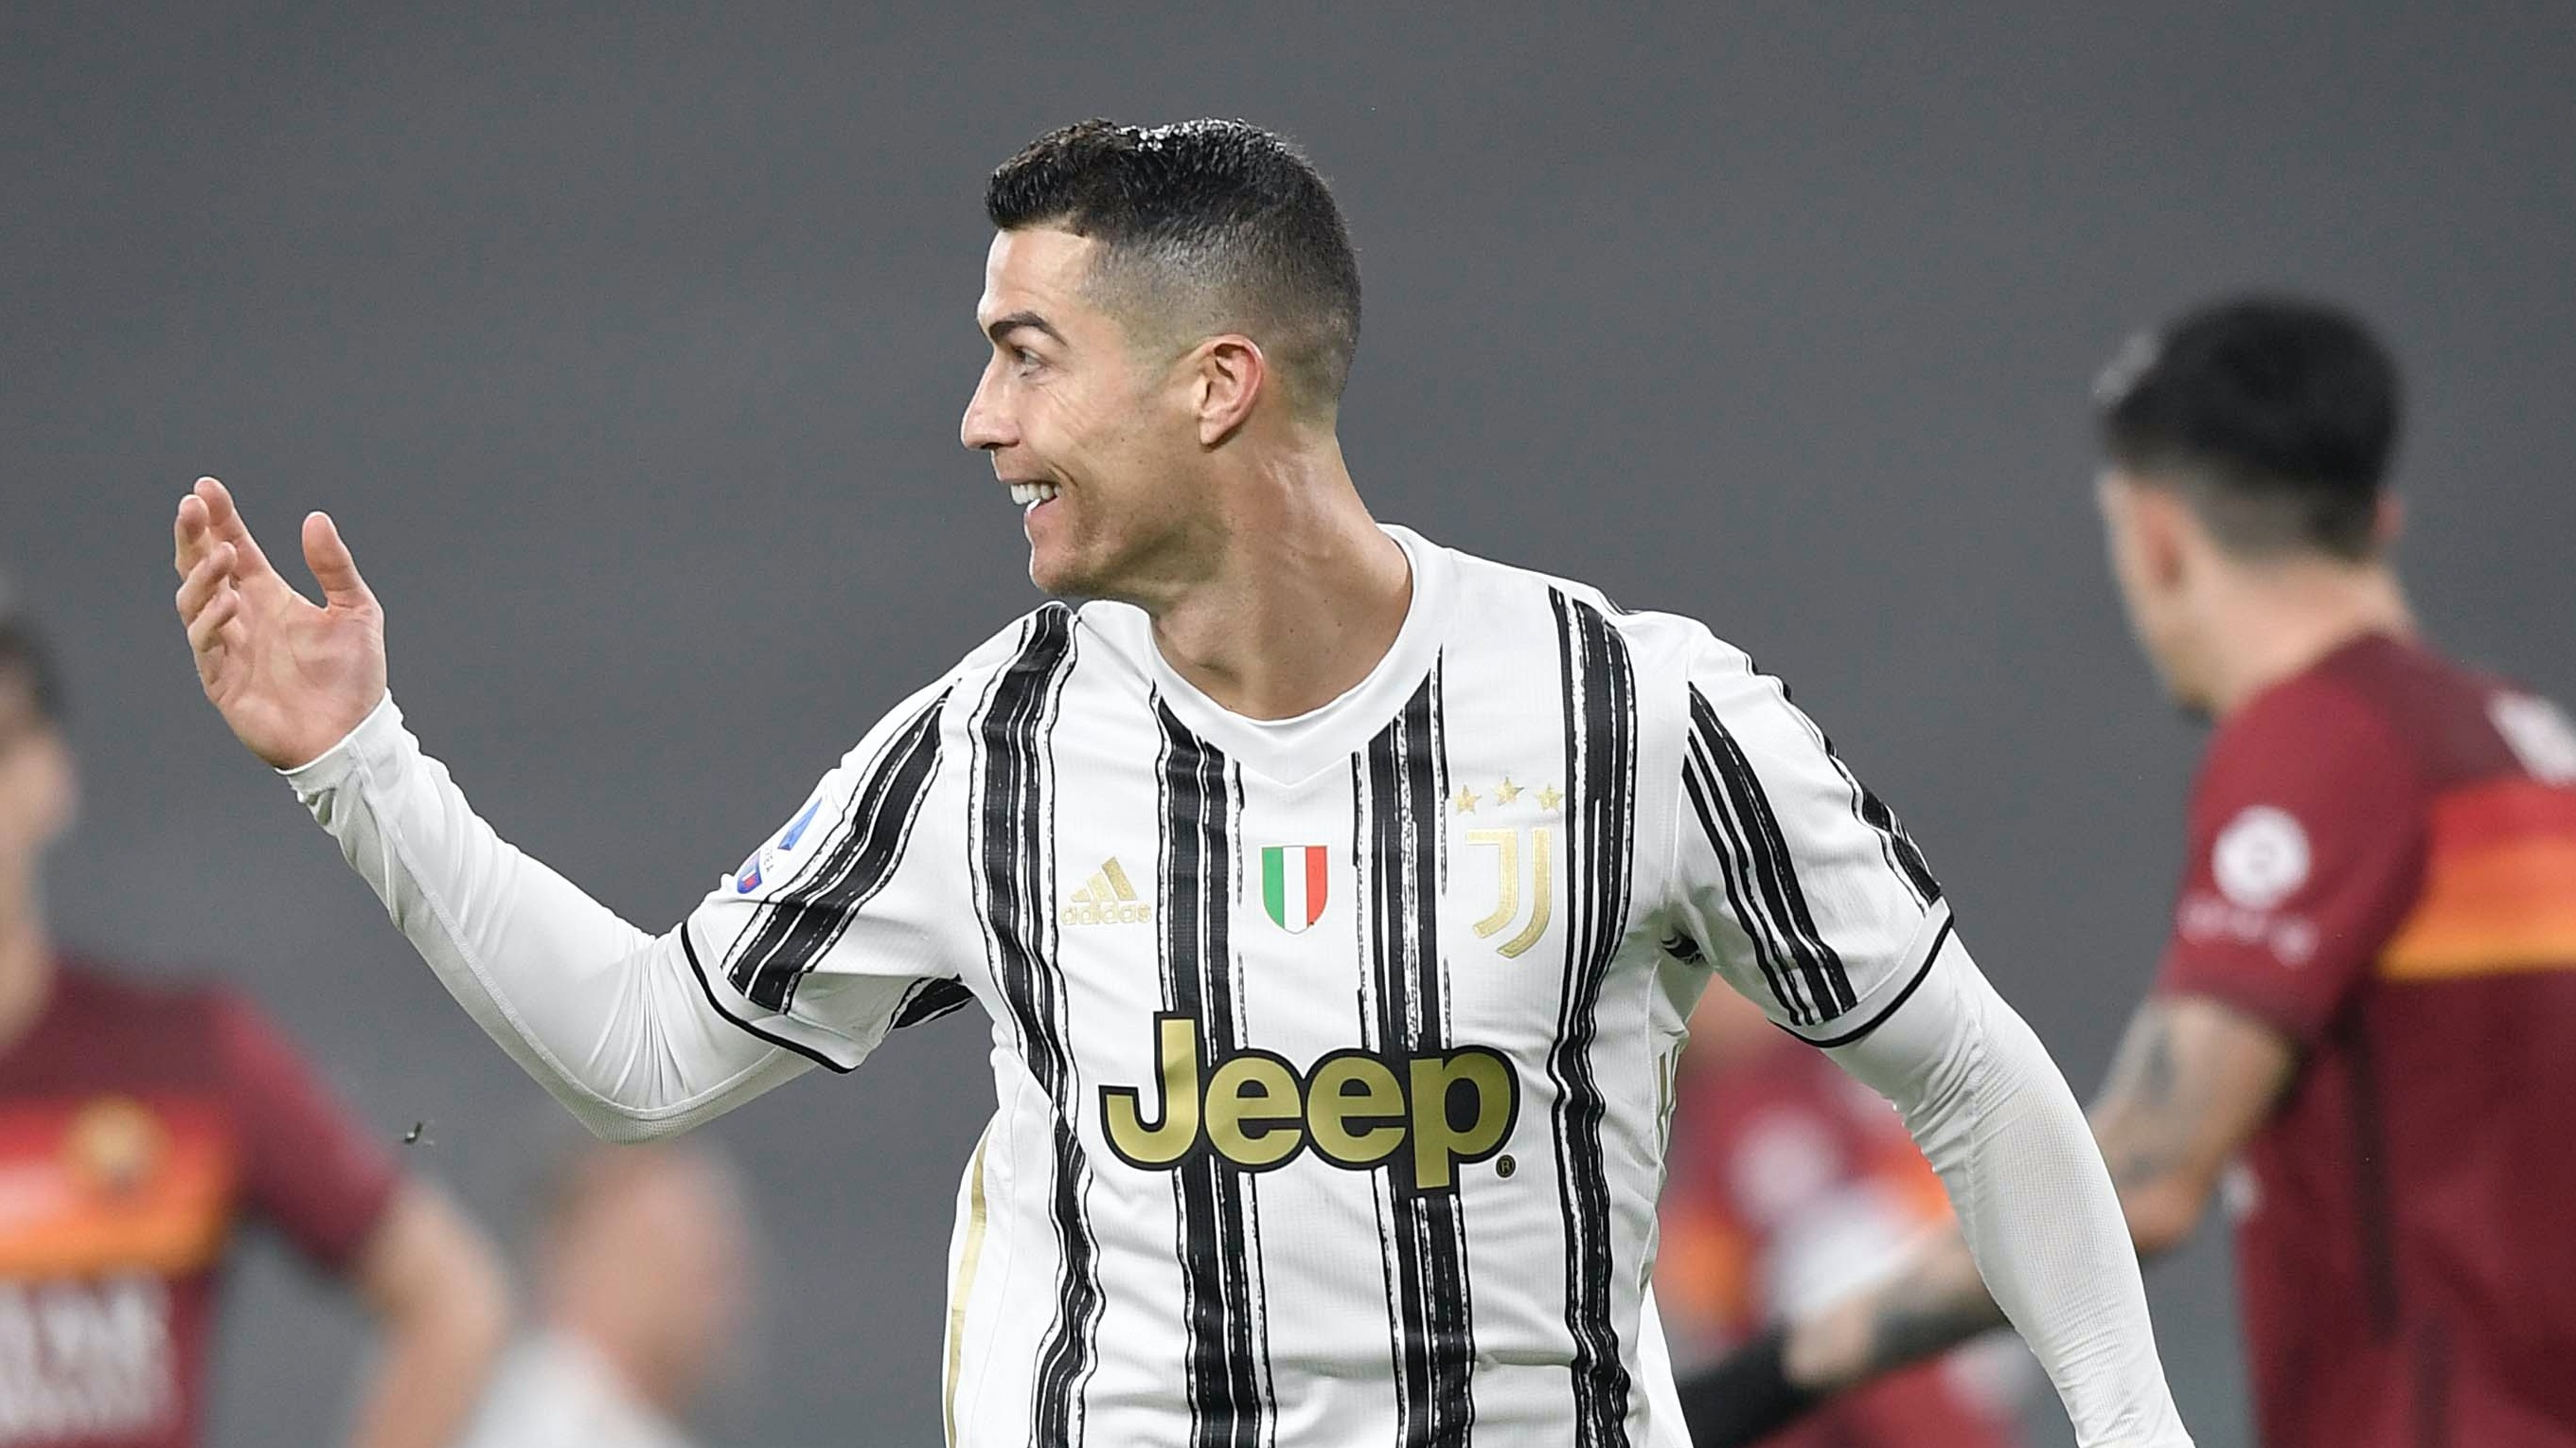 Cristiano Ronaldo akan kembali menjadi tumpuan mencetak gol saat bentrok dengan Inter Milan di leg kedua babak semifinal Coppa Italia. (Foto: Twitter/@juventusfc)